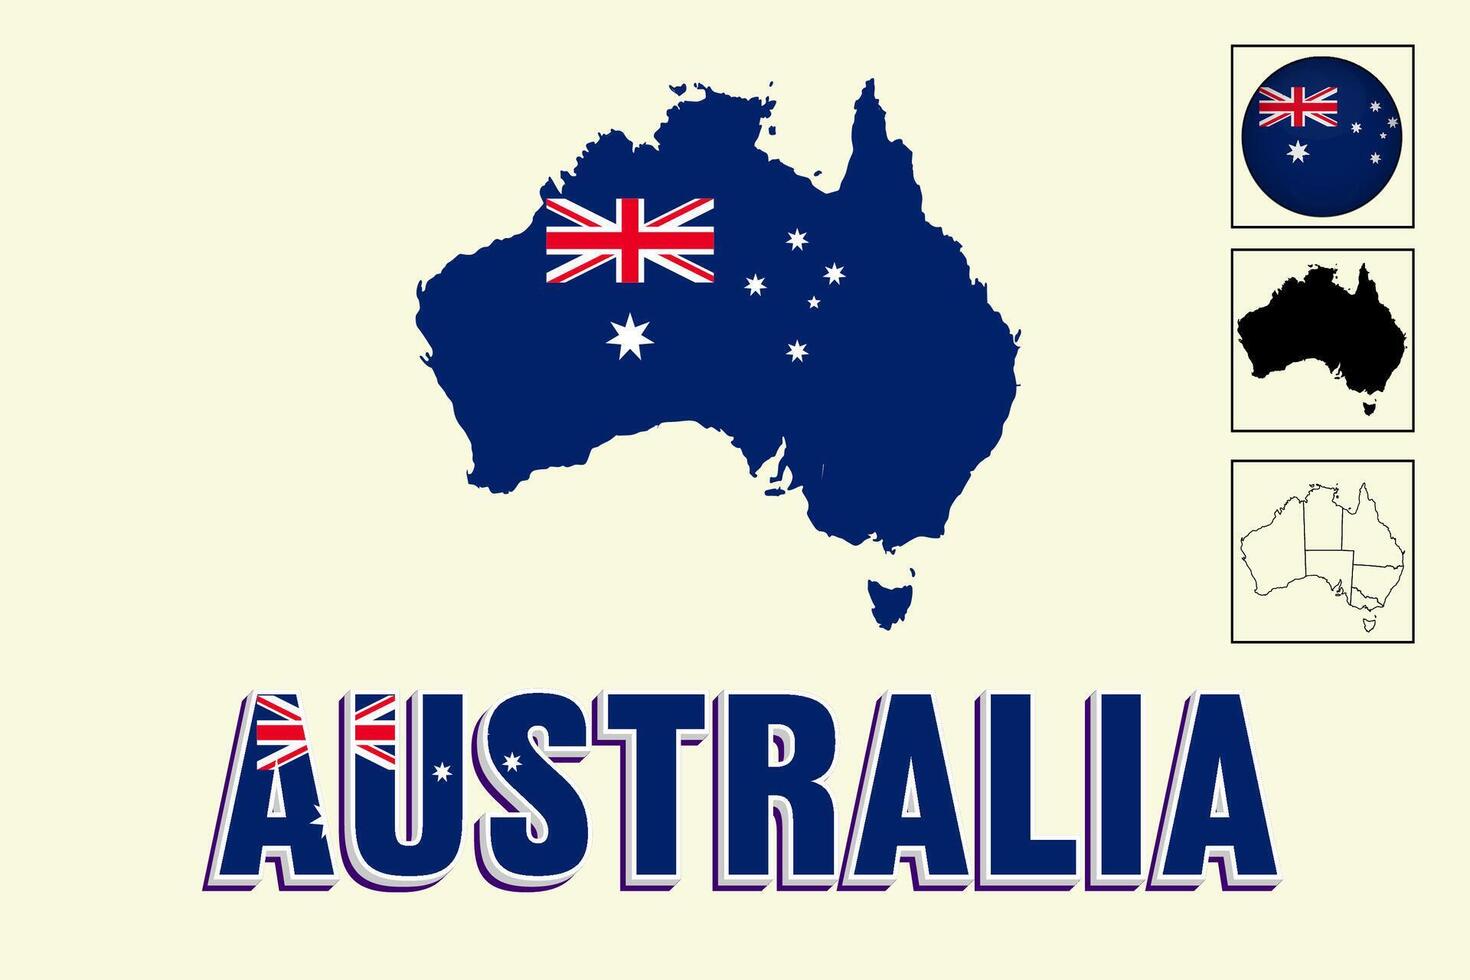 Australie carte et Australie drapeau vecteur dessin